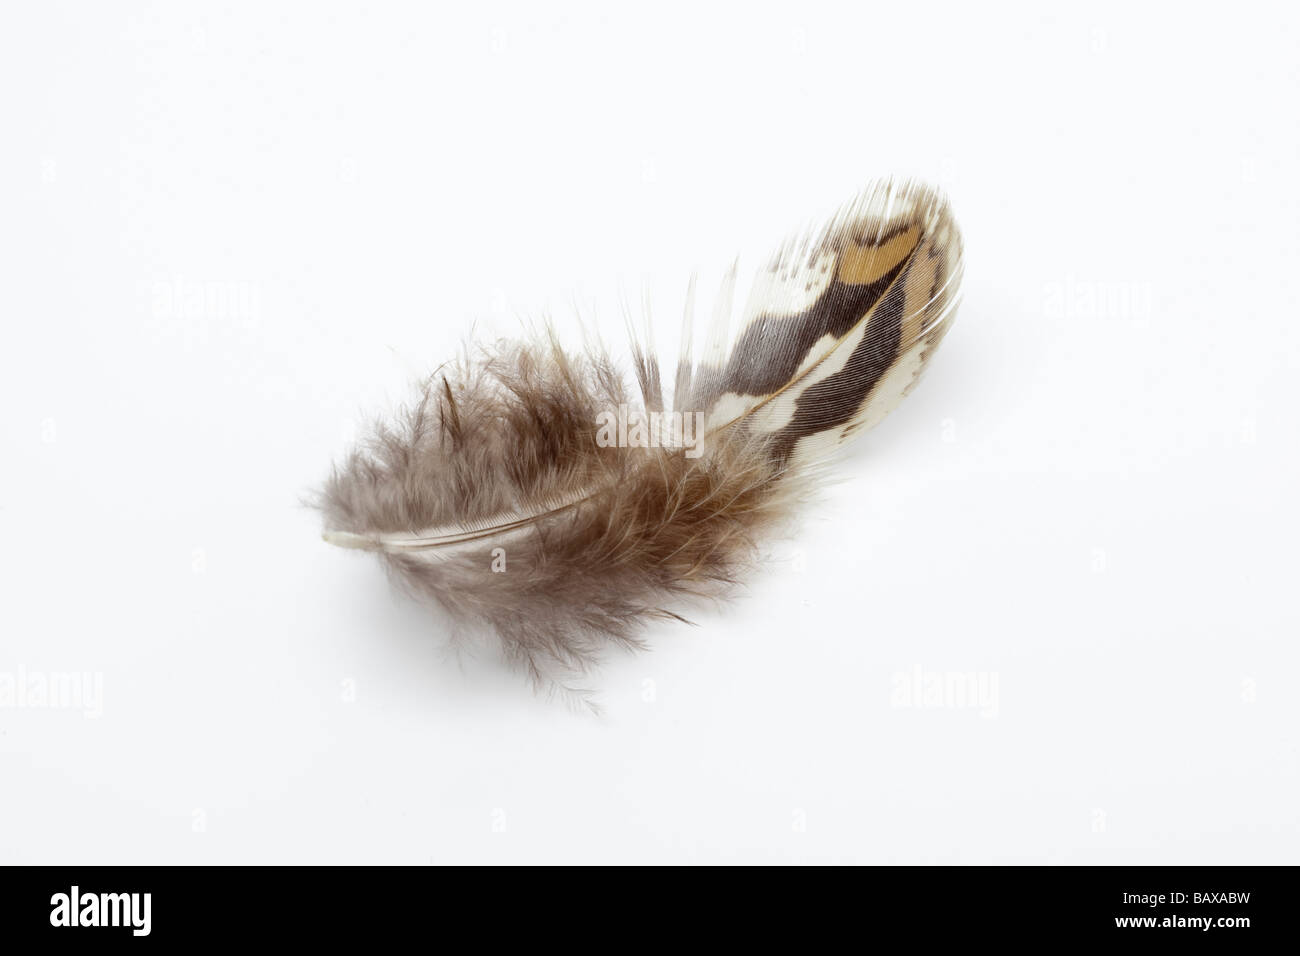 Single pheasant feather Stock Photo